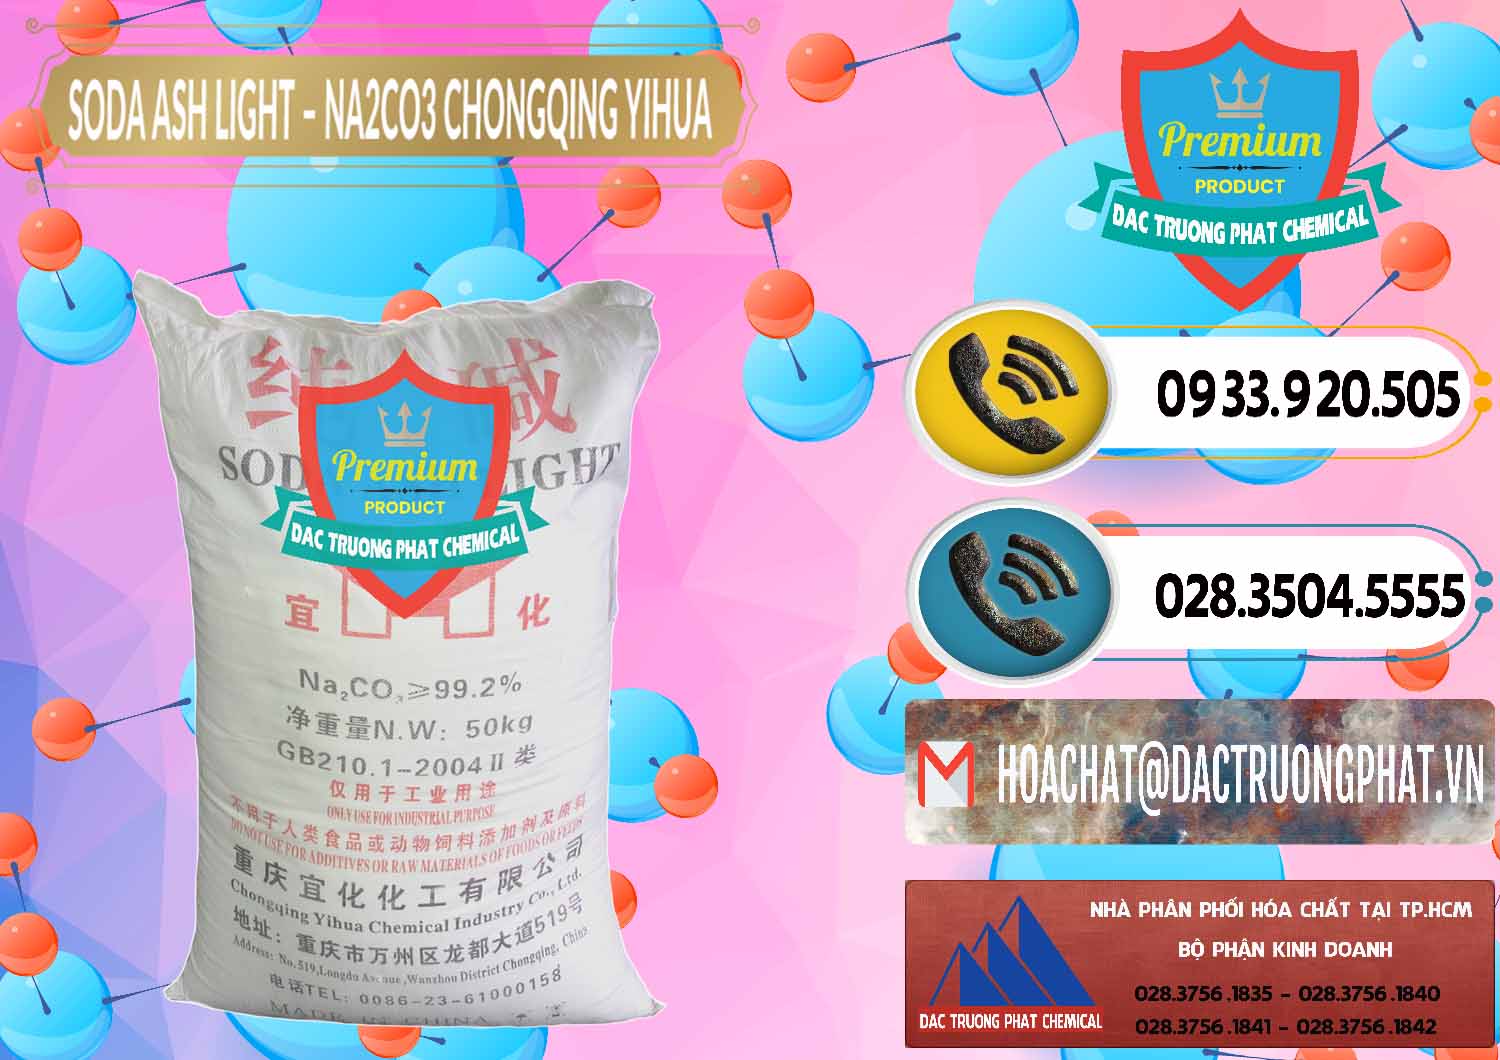 Công ty bán _ phân phối Soda Ash Light - NA2CO3 Chongqing Yihua Trung Quốc China - 0129 - Cty nhập khẩu và phân phối hóa chất tại TP.HCM - hoachatdetnhuom.vn